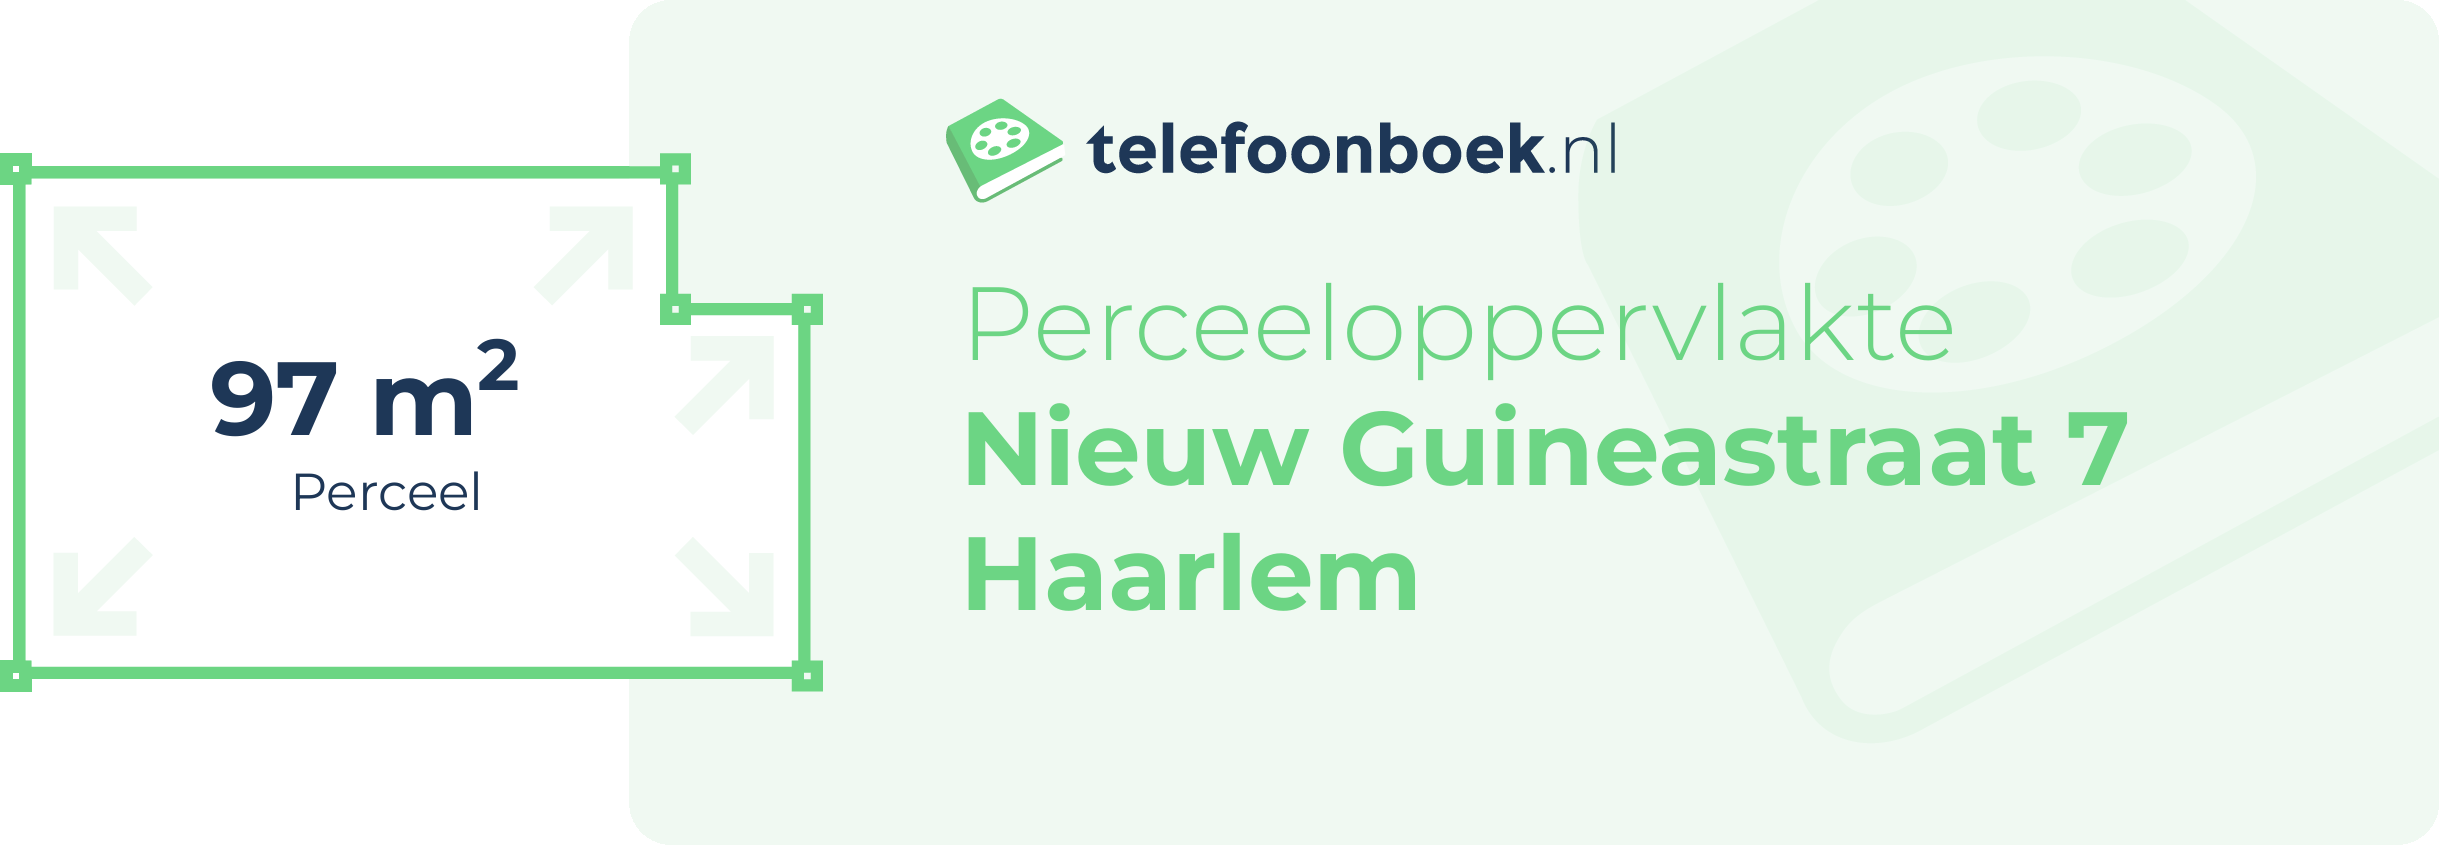 Perceeloppervlakte Nieuw Guineastraat 7 Haarlem